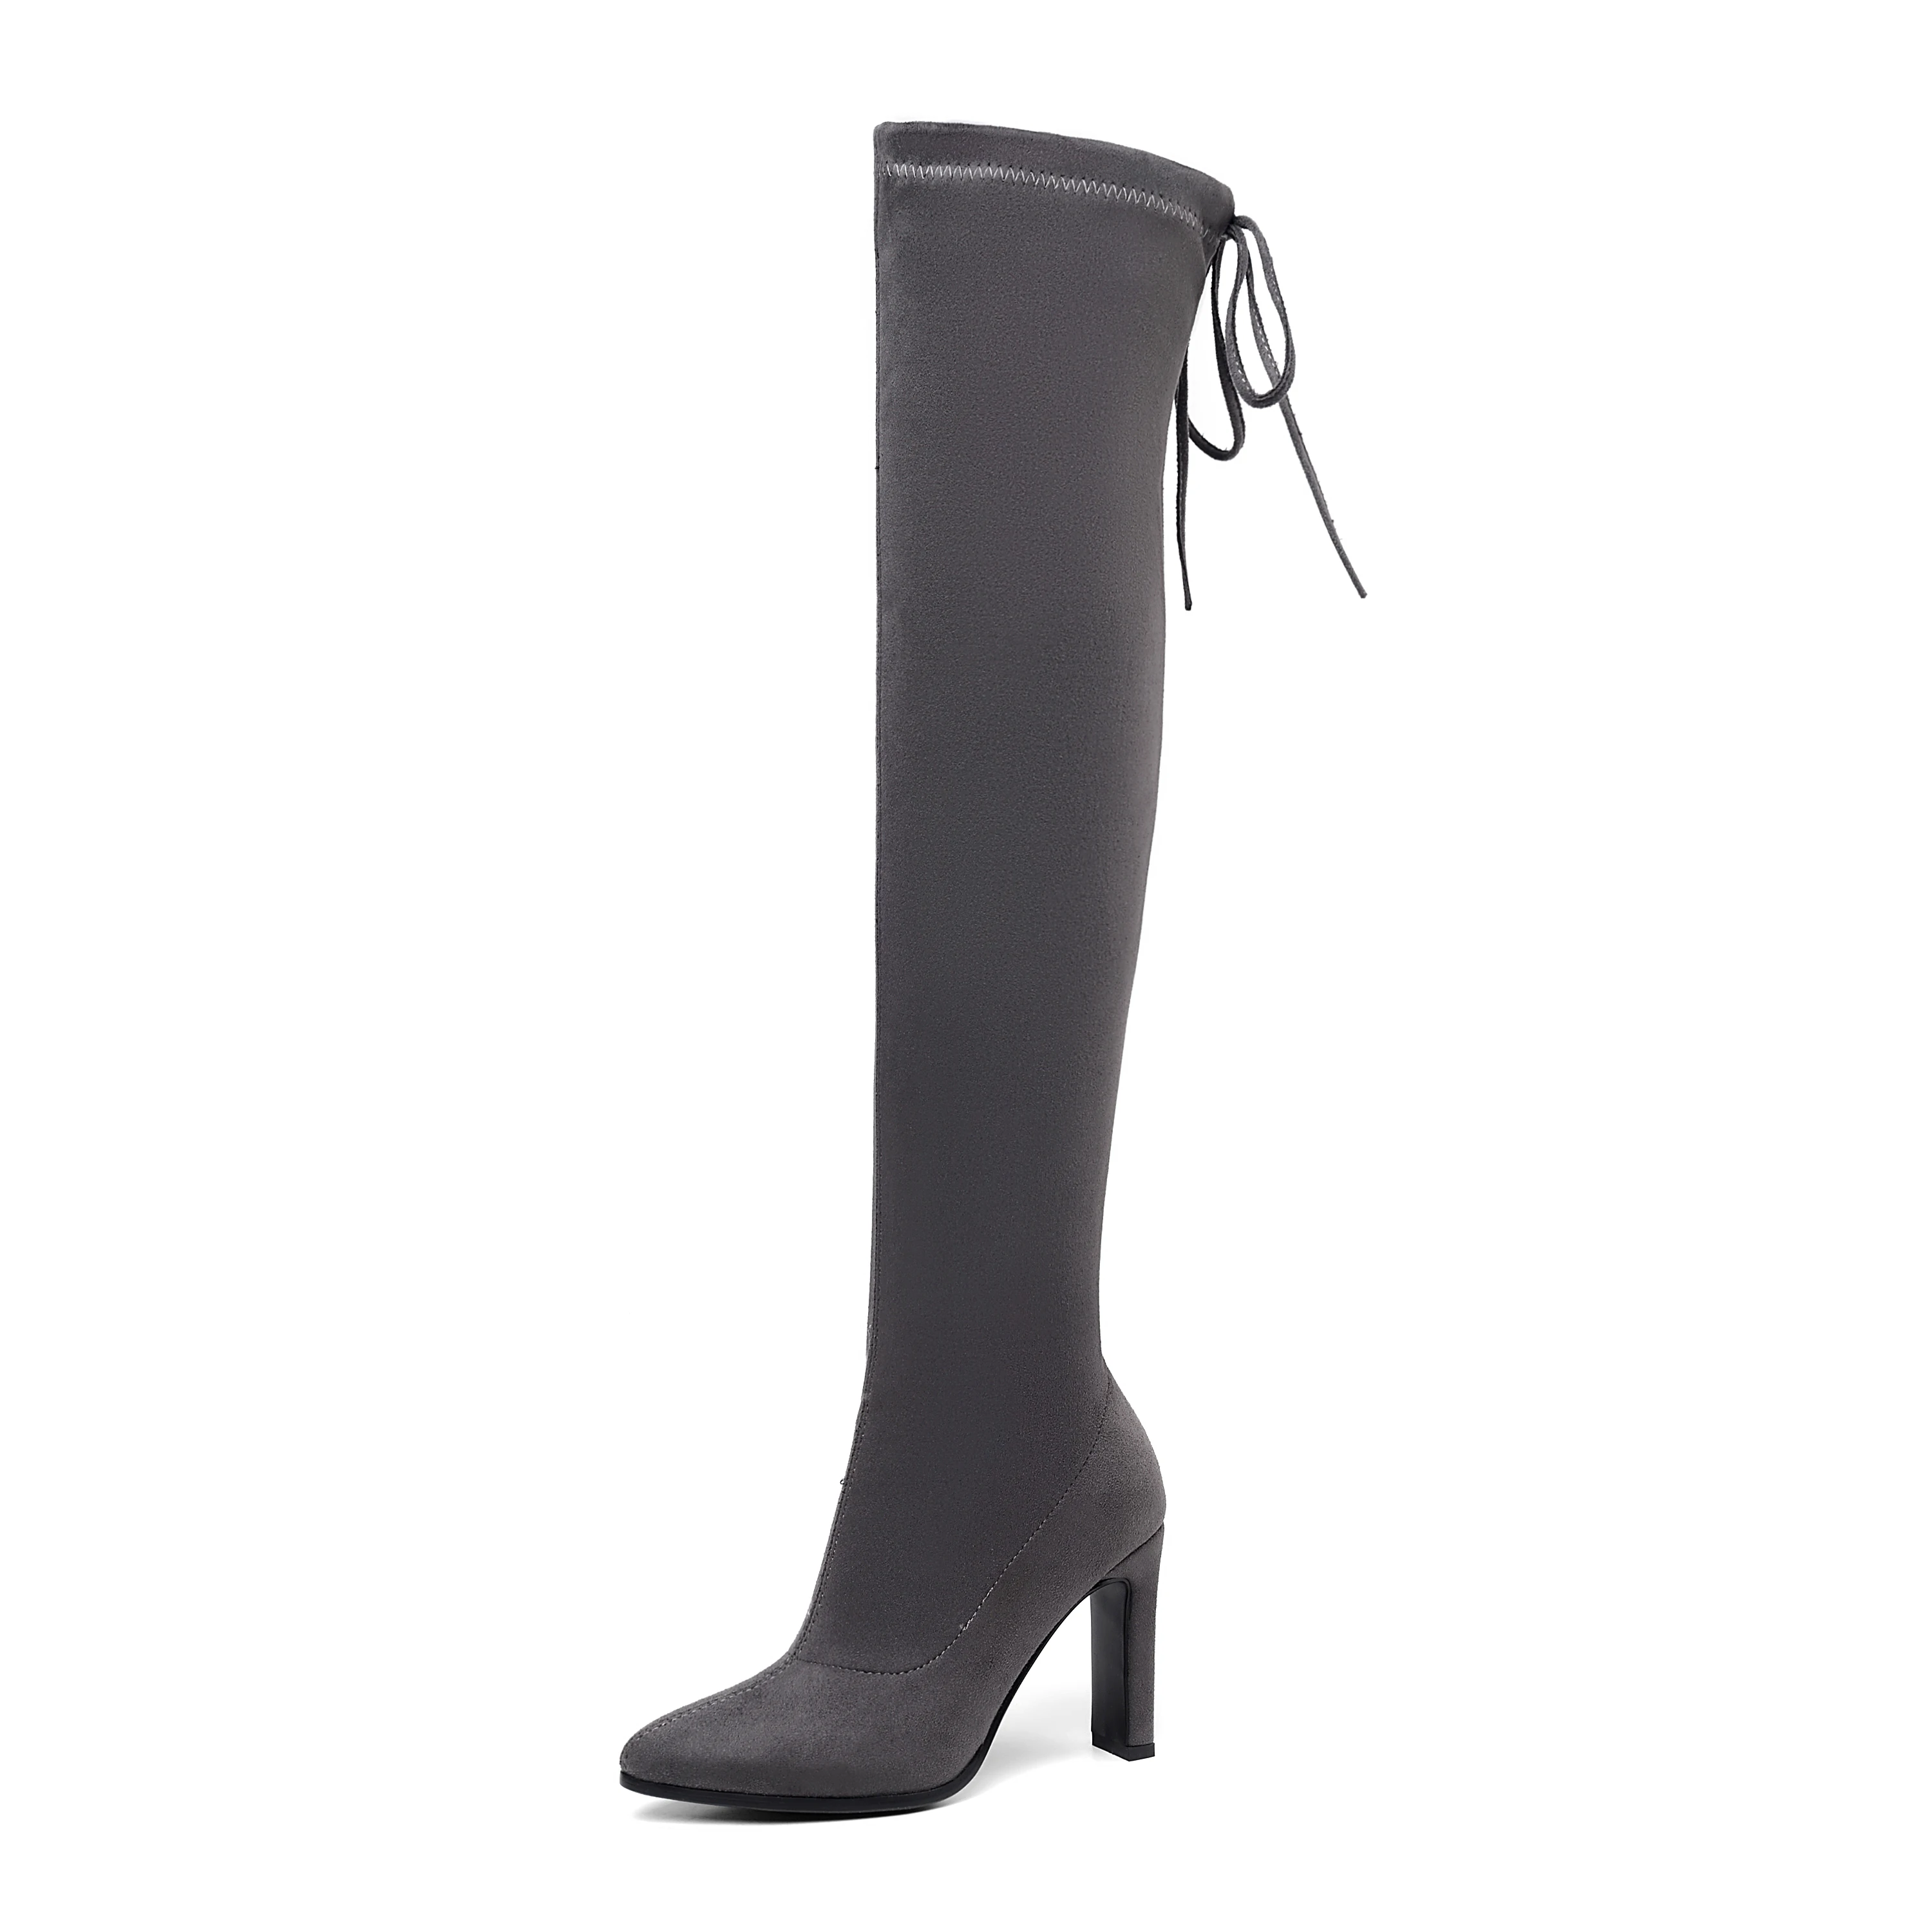 QUTAA г. Модные ботфорты на высоком квадратном каблуке зимняя женская обувь женские эластичные высокие сапоги на платформе со шнуровкой размеры 34-43 - Цвет: Серый